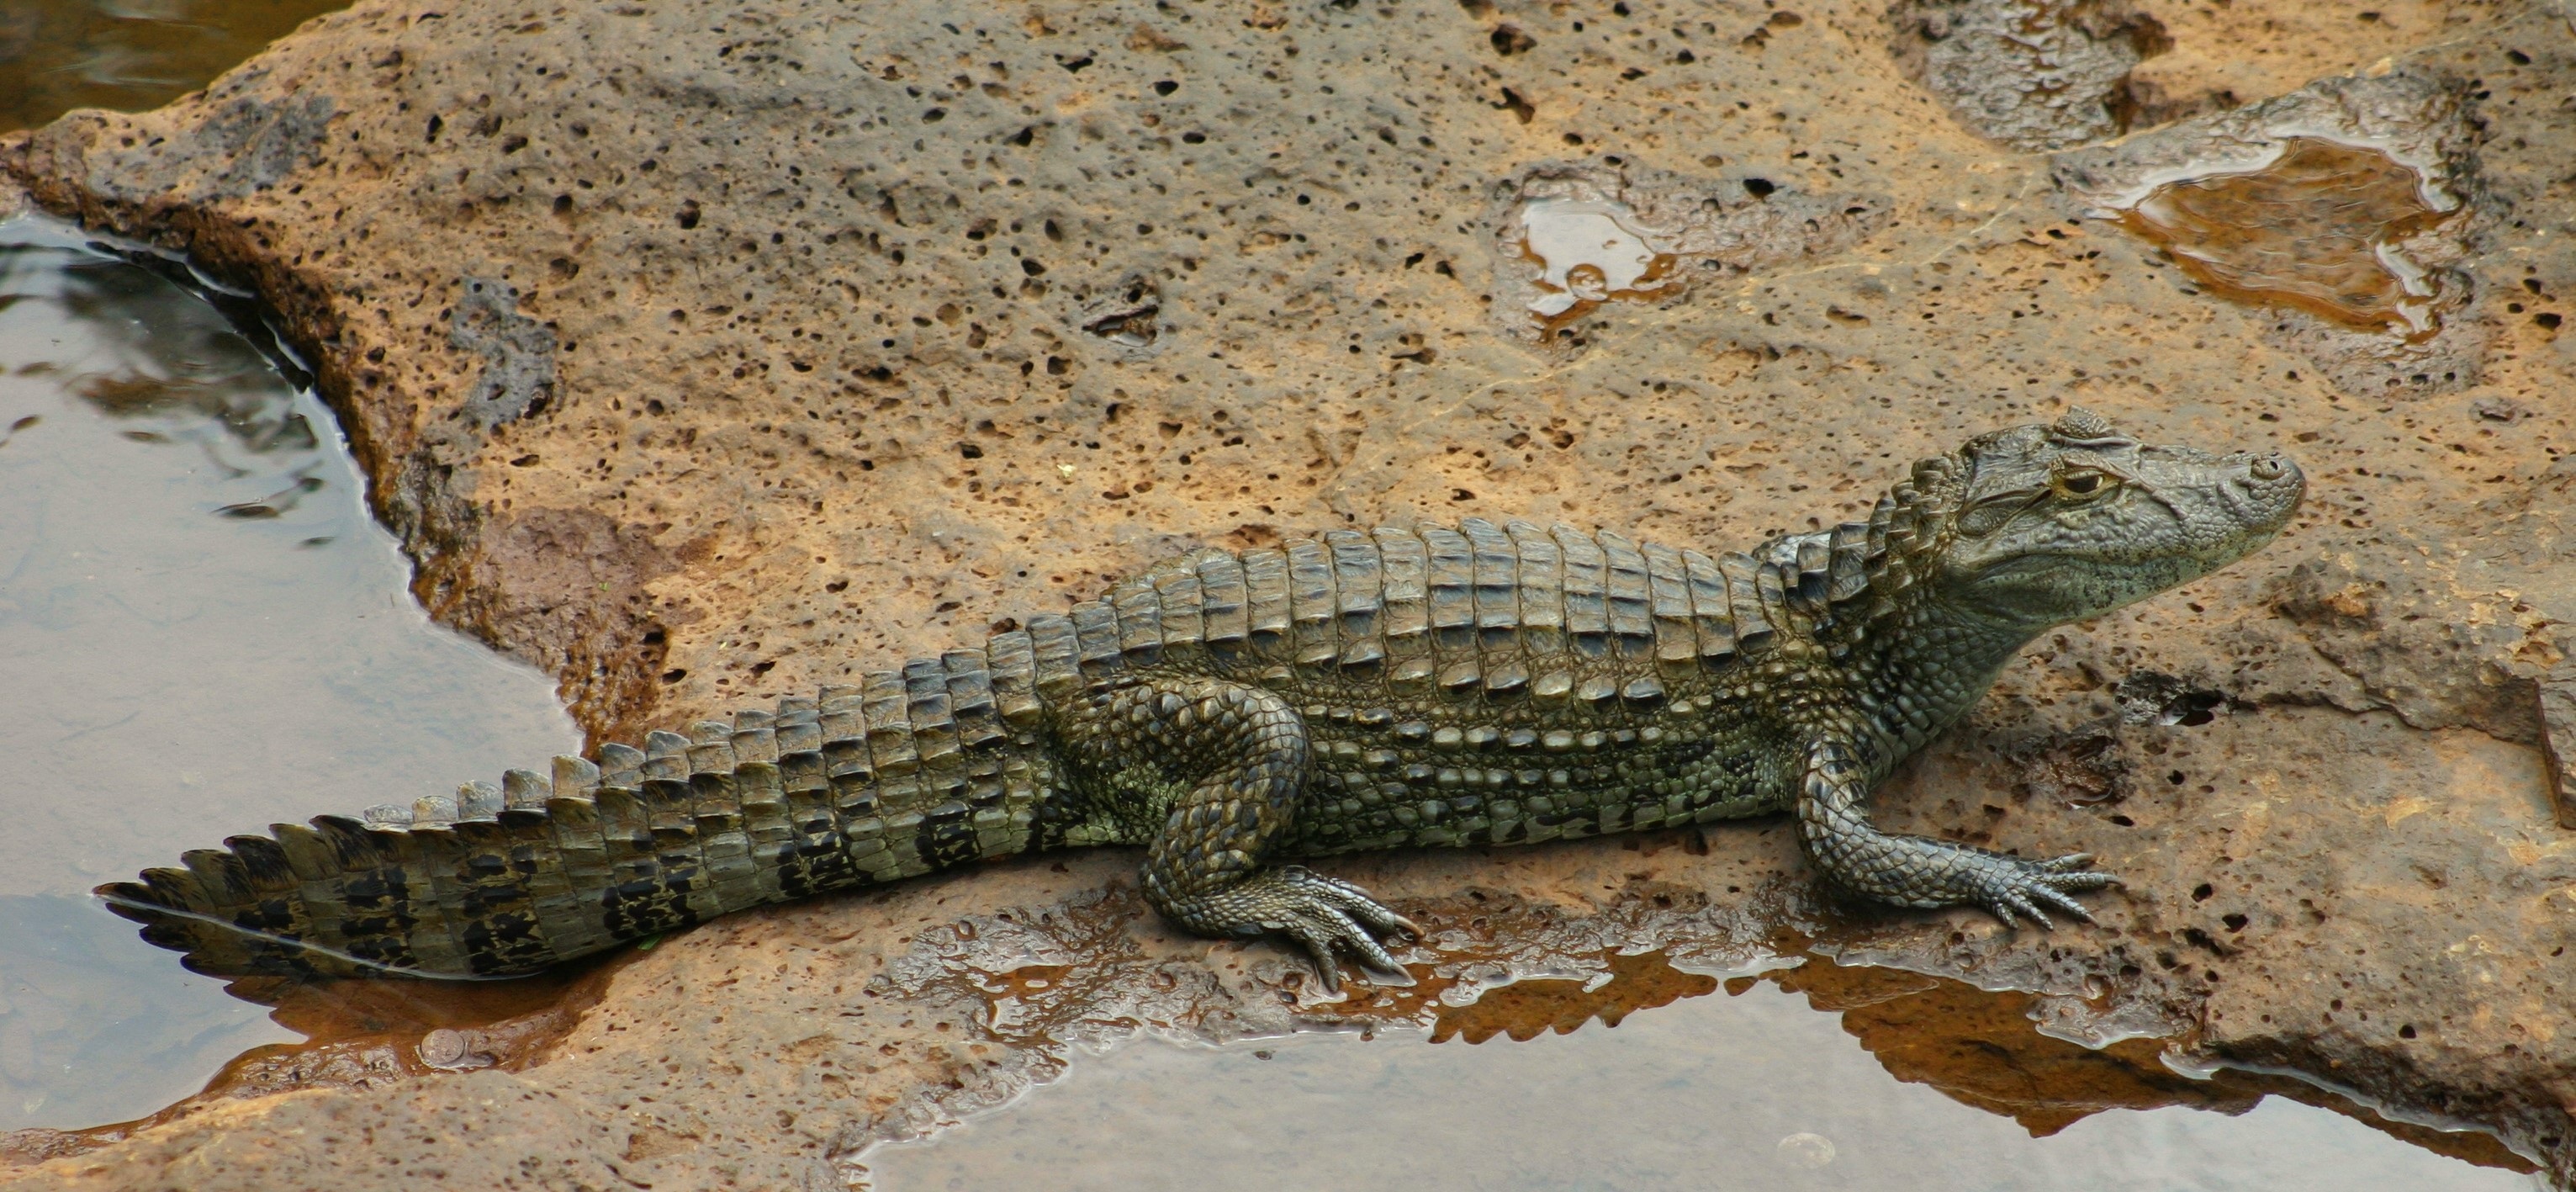 Crocodile Pond Reptile Rock 3063x1417